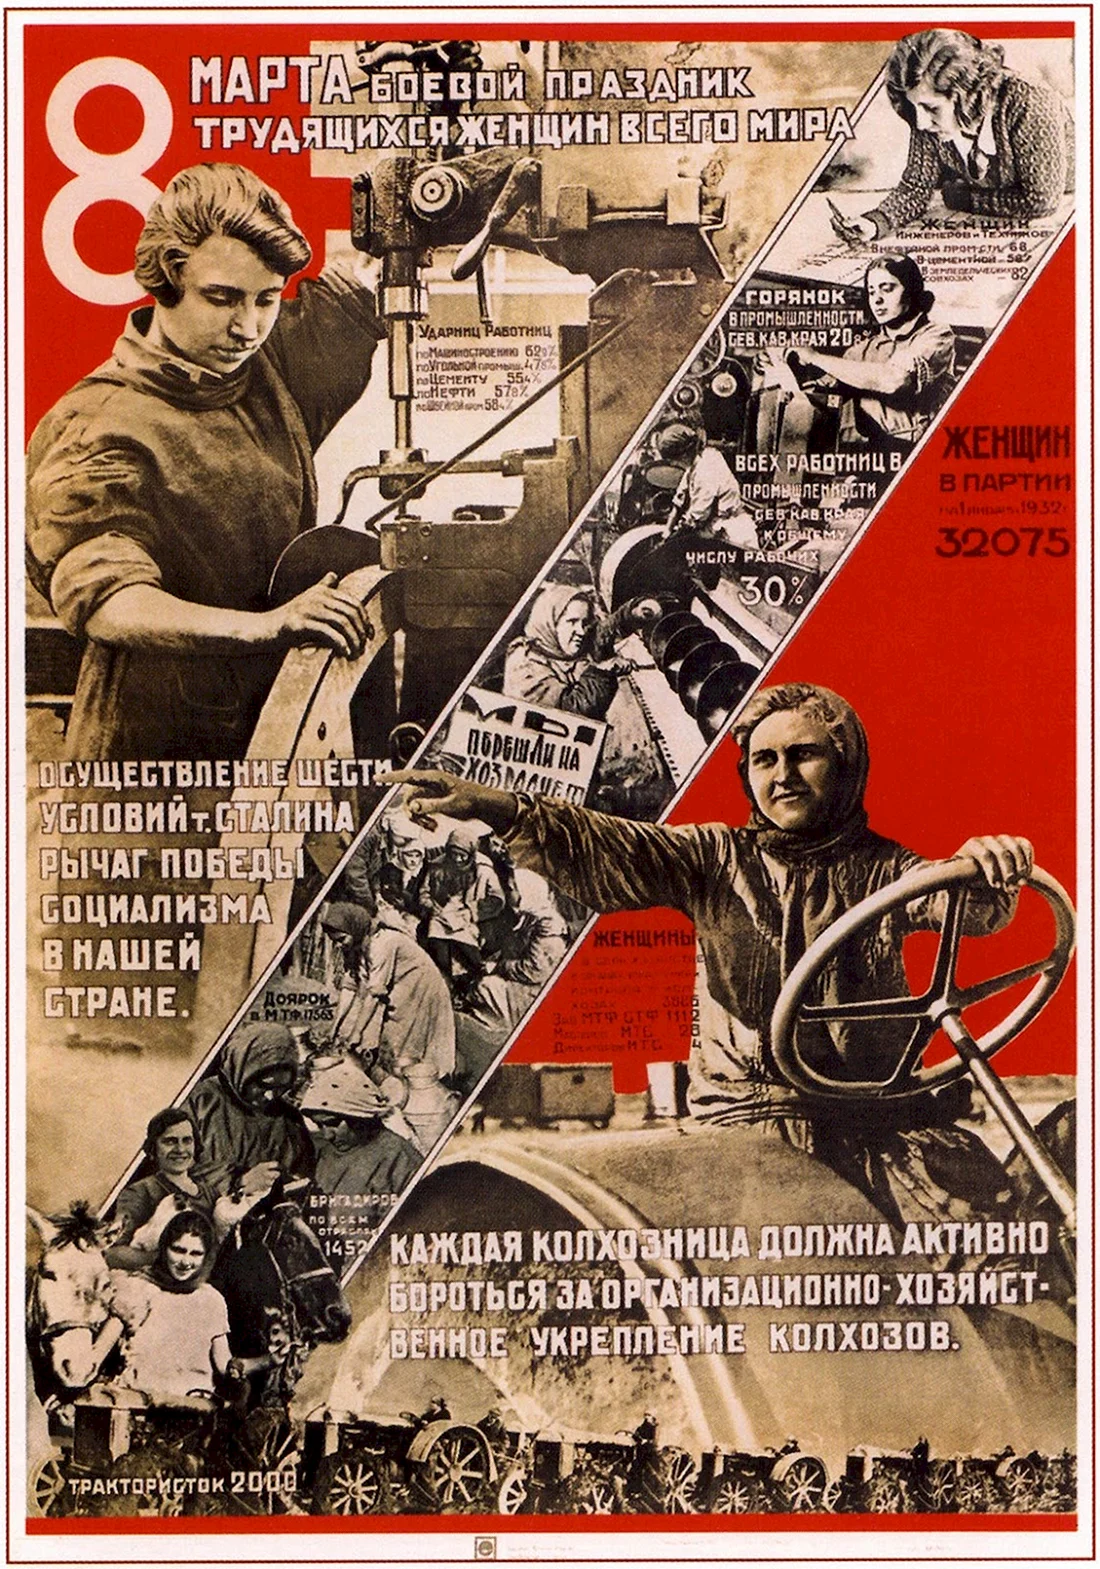 8 Марта боевой праздник трудящихся женщин всего мира